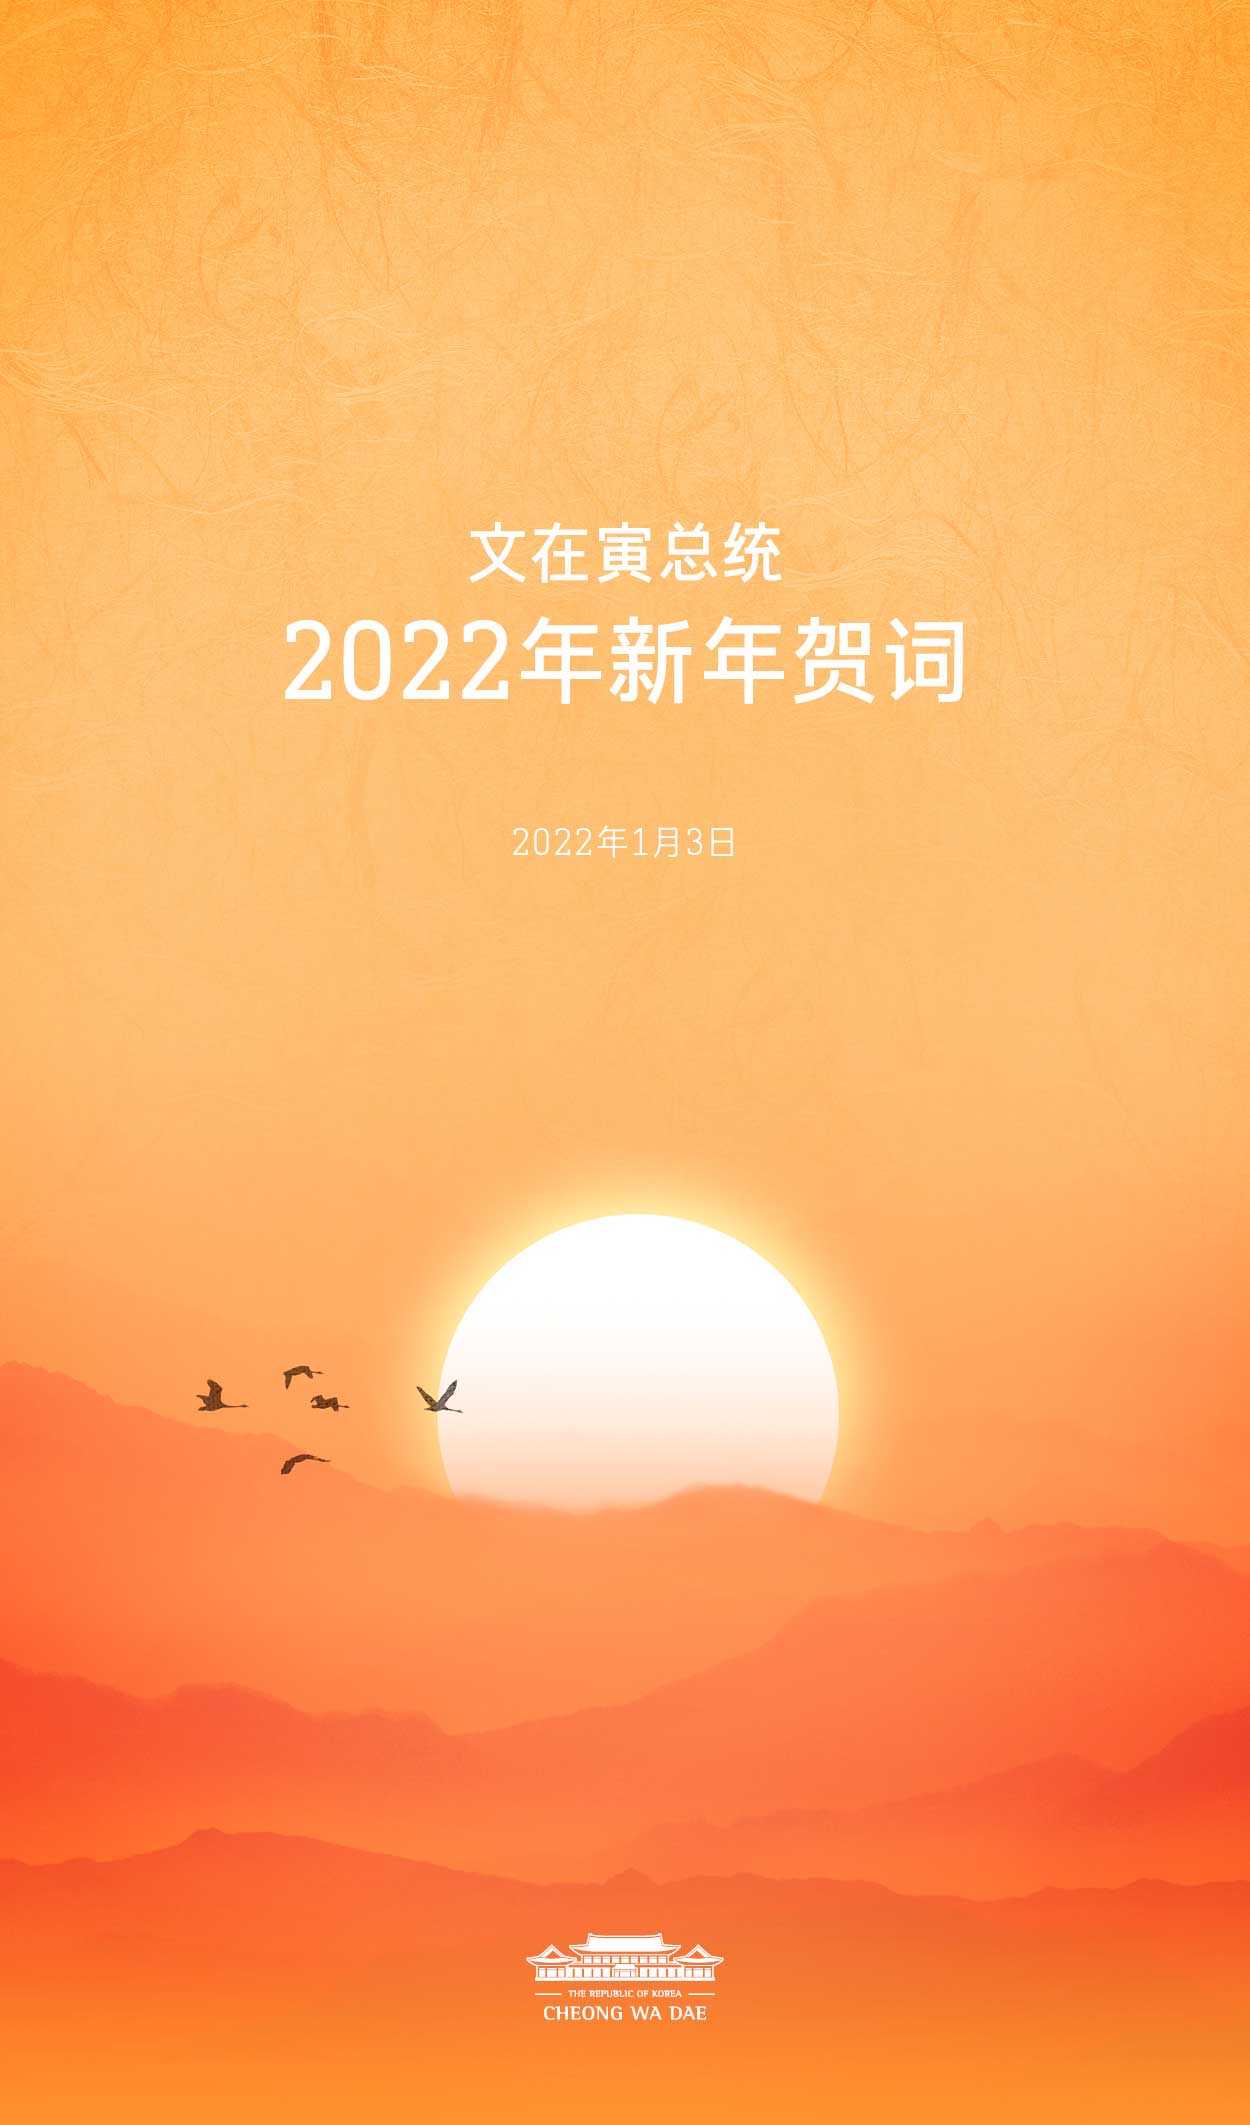 文在寅总统2022年新年贺词 1